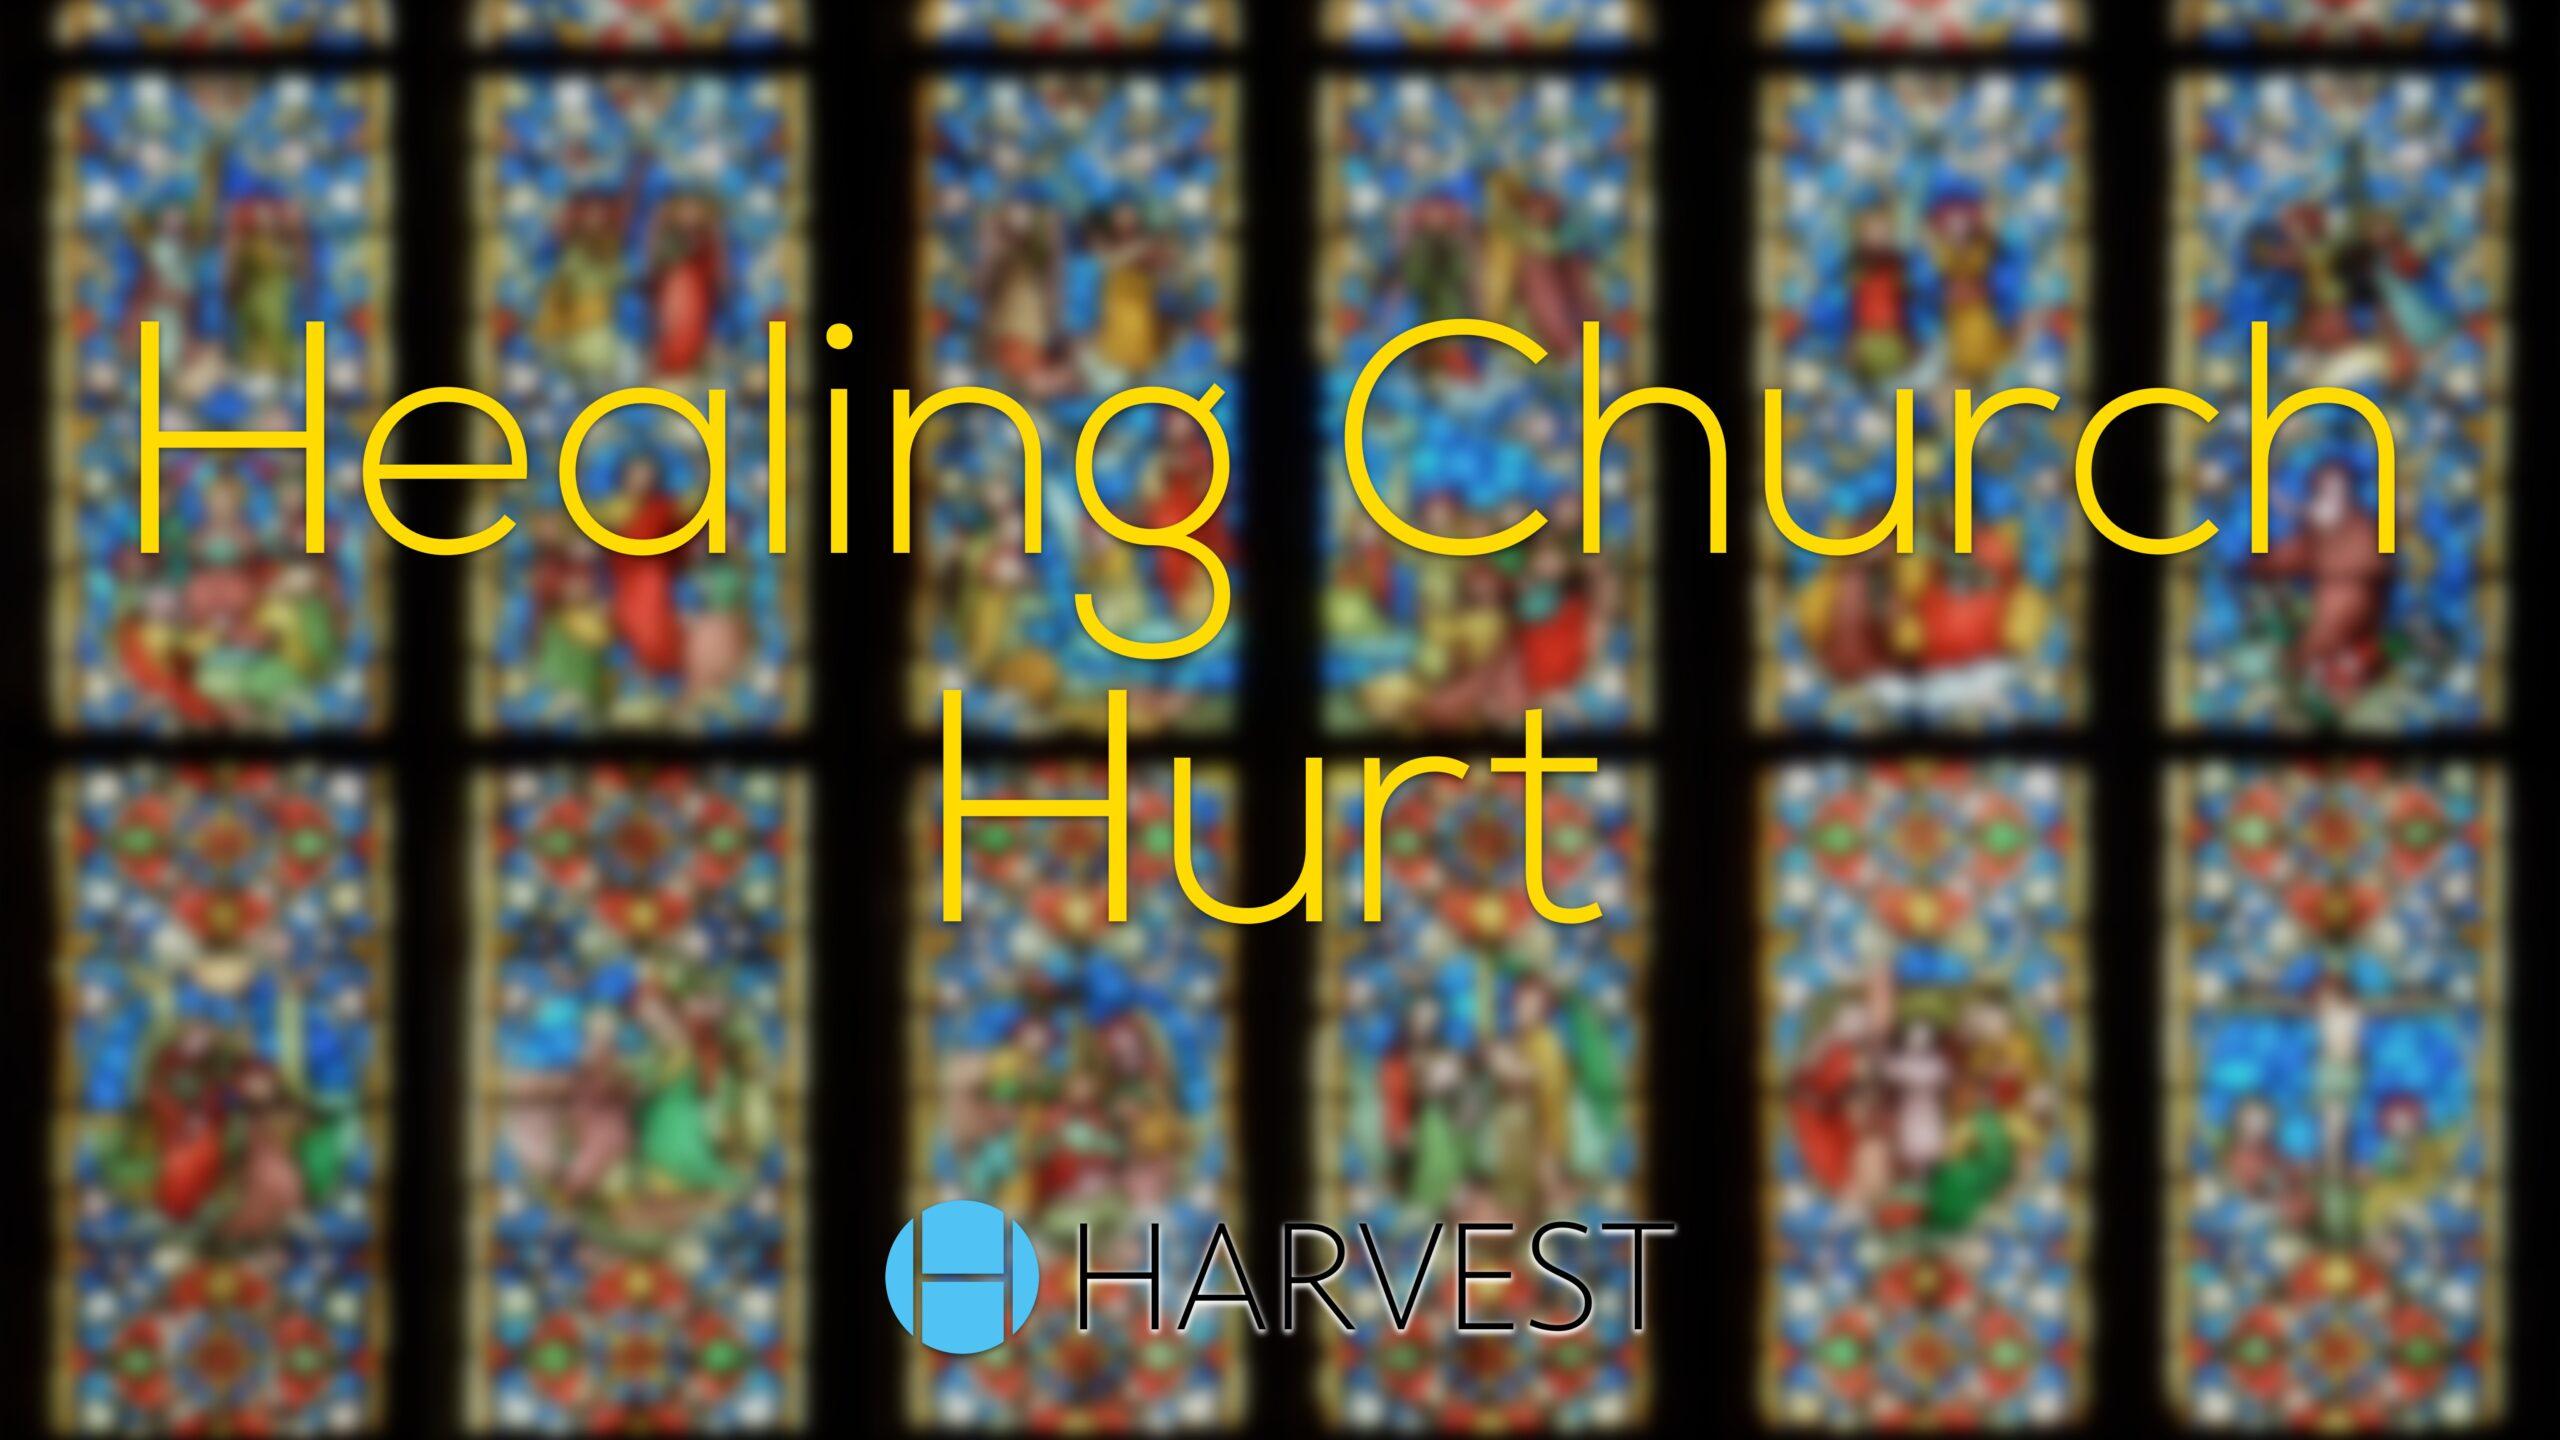 Healing Church Hurt